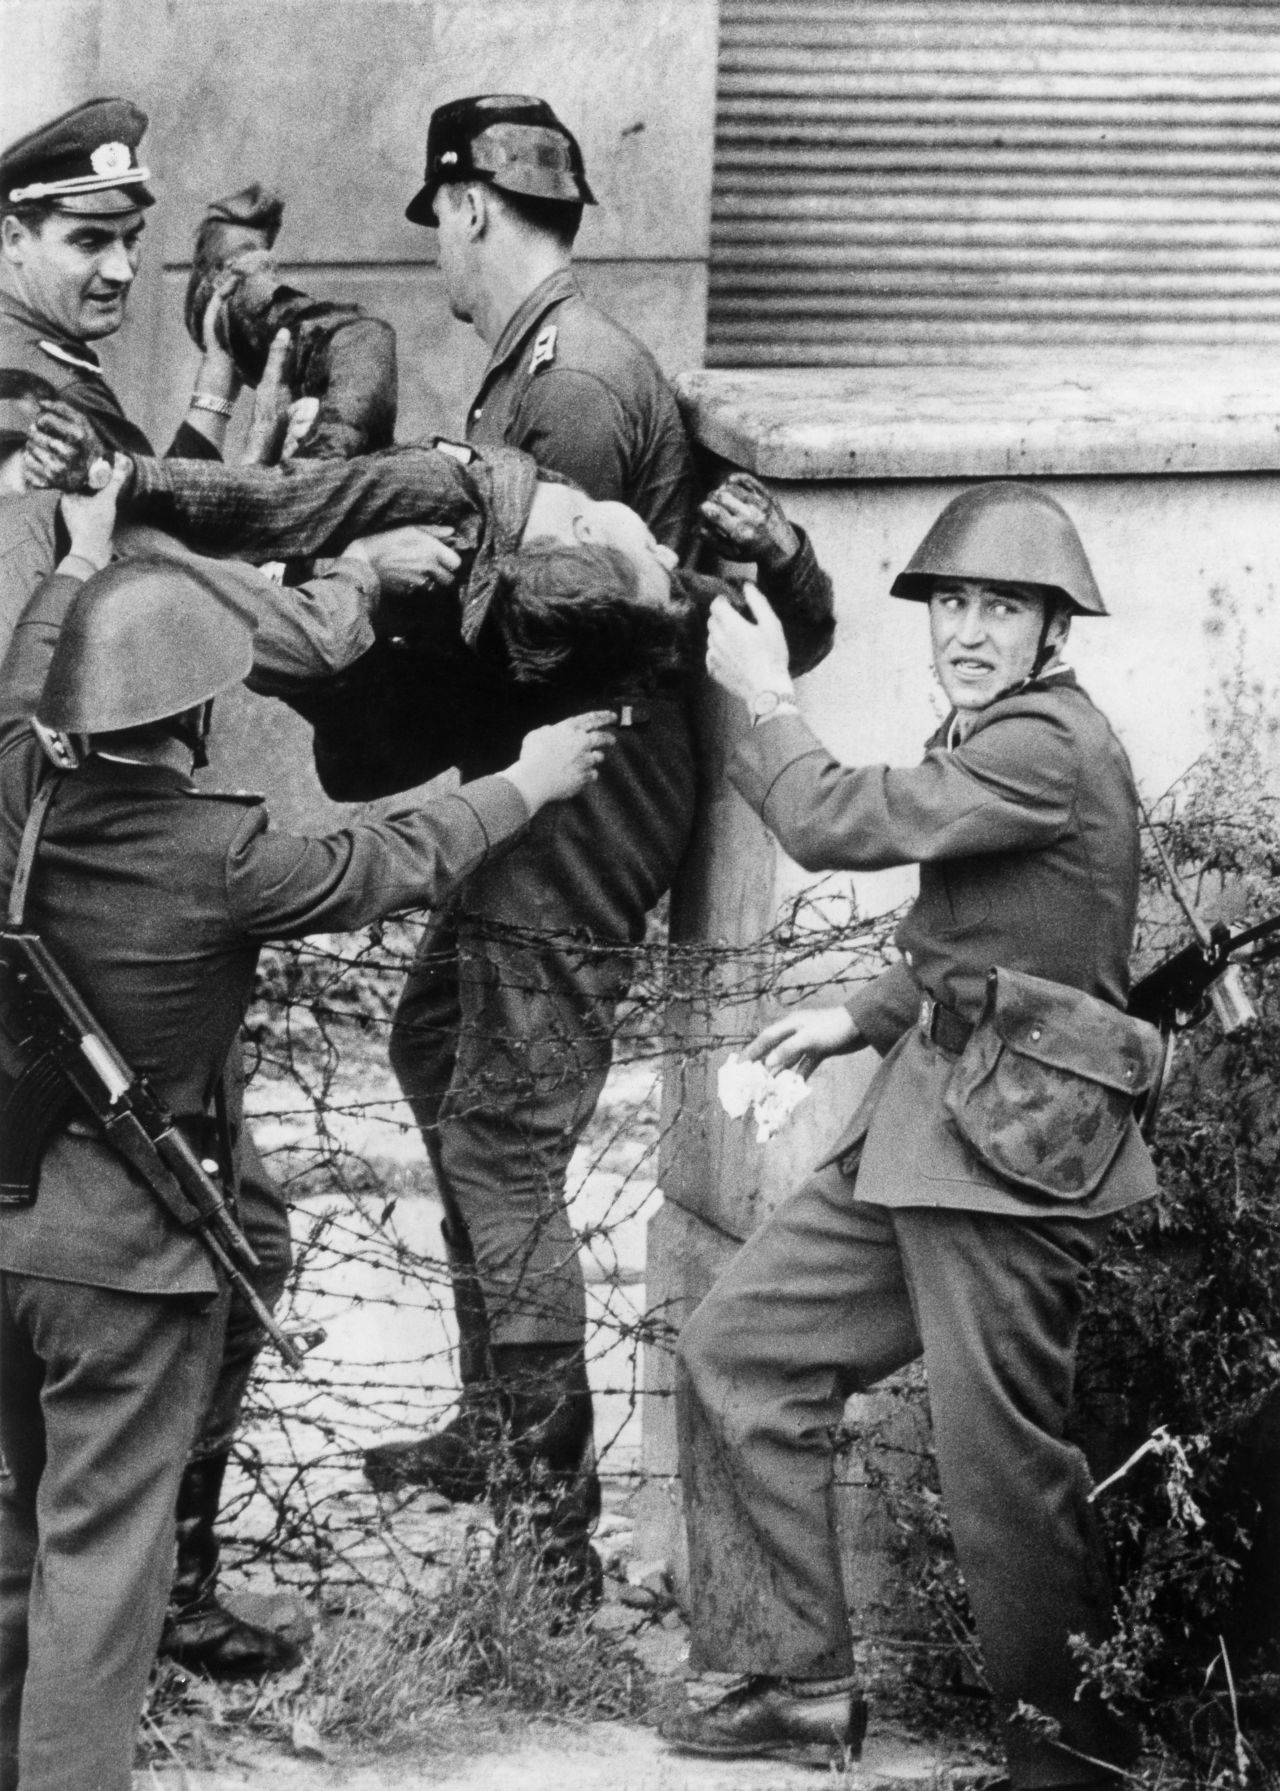 Schwarzweiß-Aufnahme: vier DDR-Grenzsoldaten bergen den leblosen Peter Fechter nach dessen gescheiterter Flucht; zwischen den Grenzern Stacheldraht, im Hintergrund eine Hausfassade.